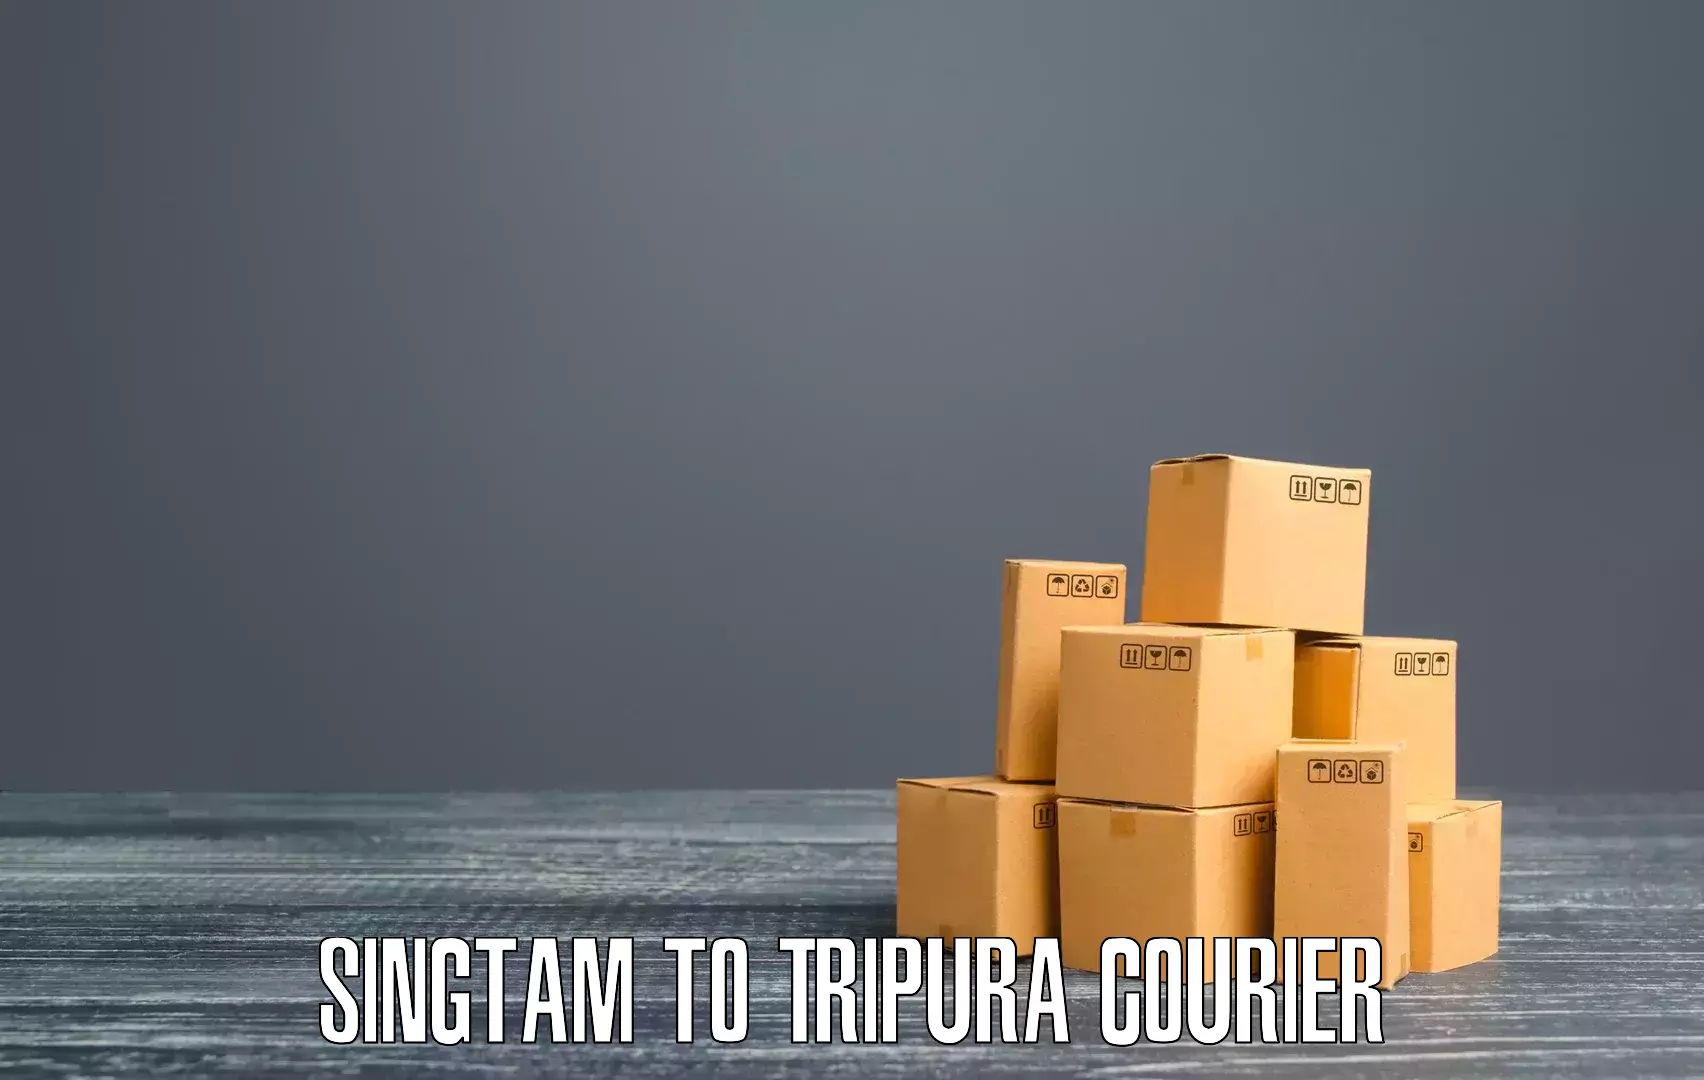 Cargo courier service Singtam to West Tripura